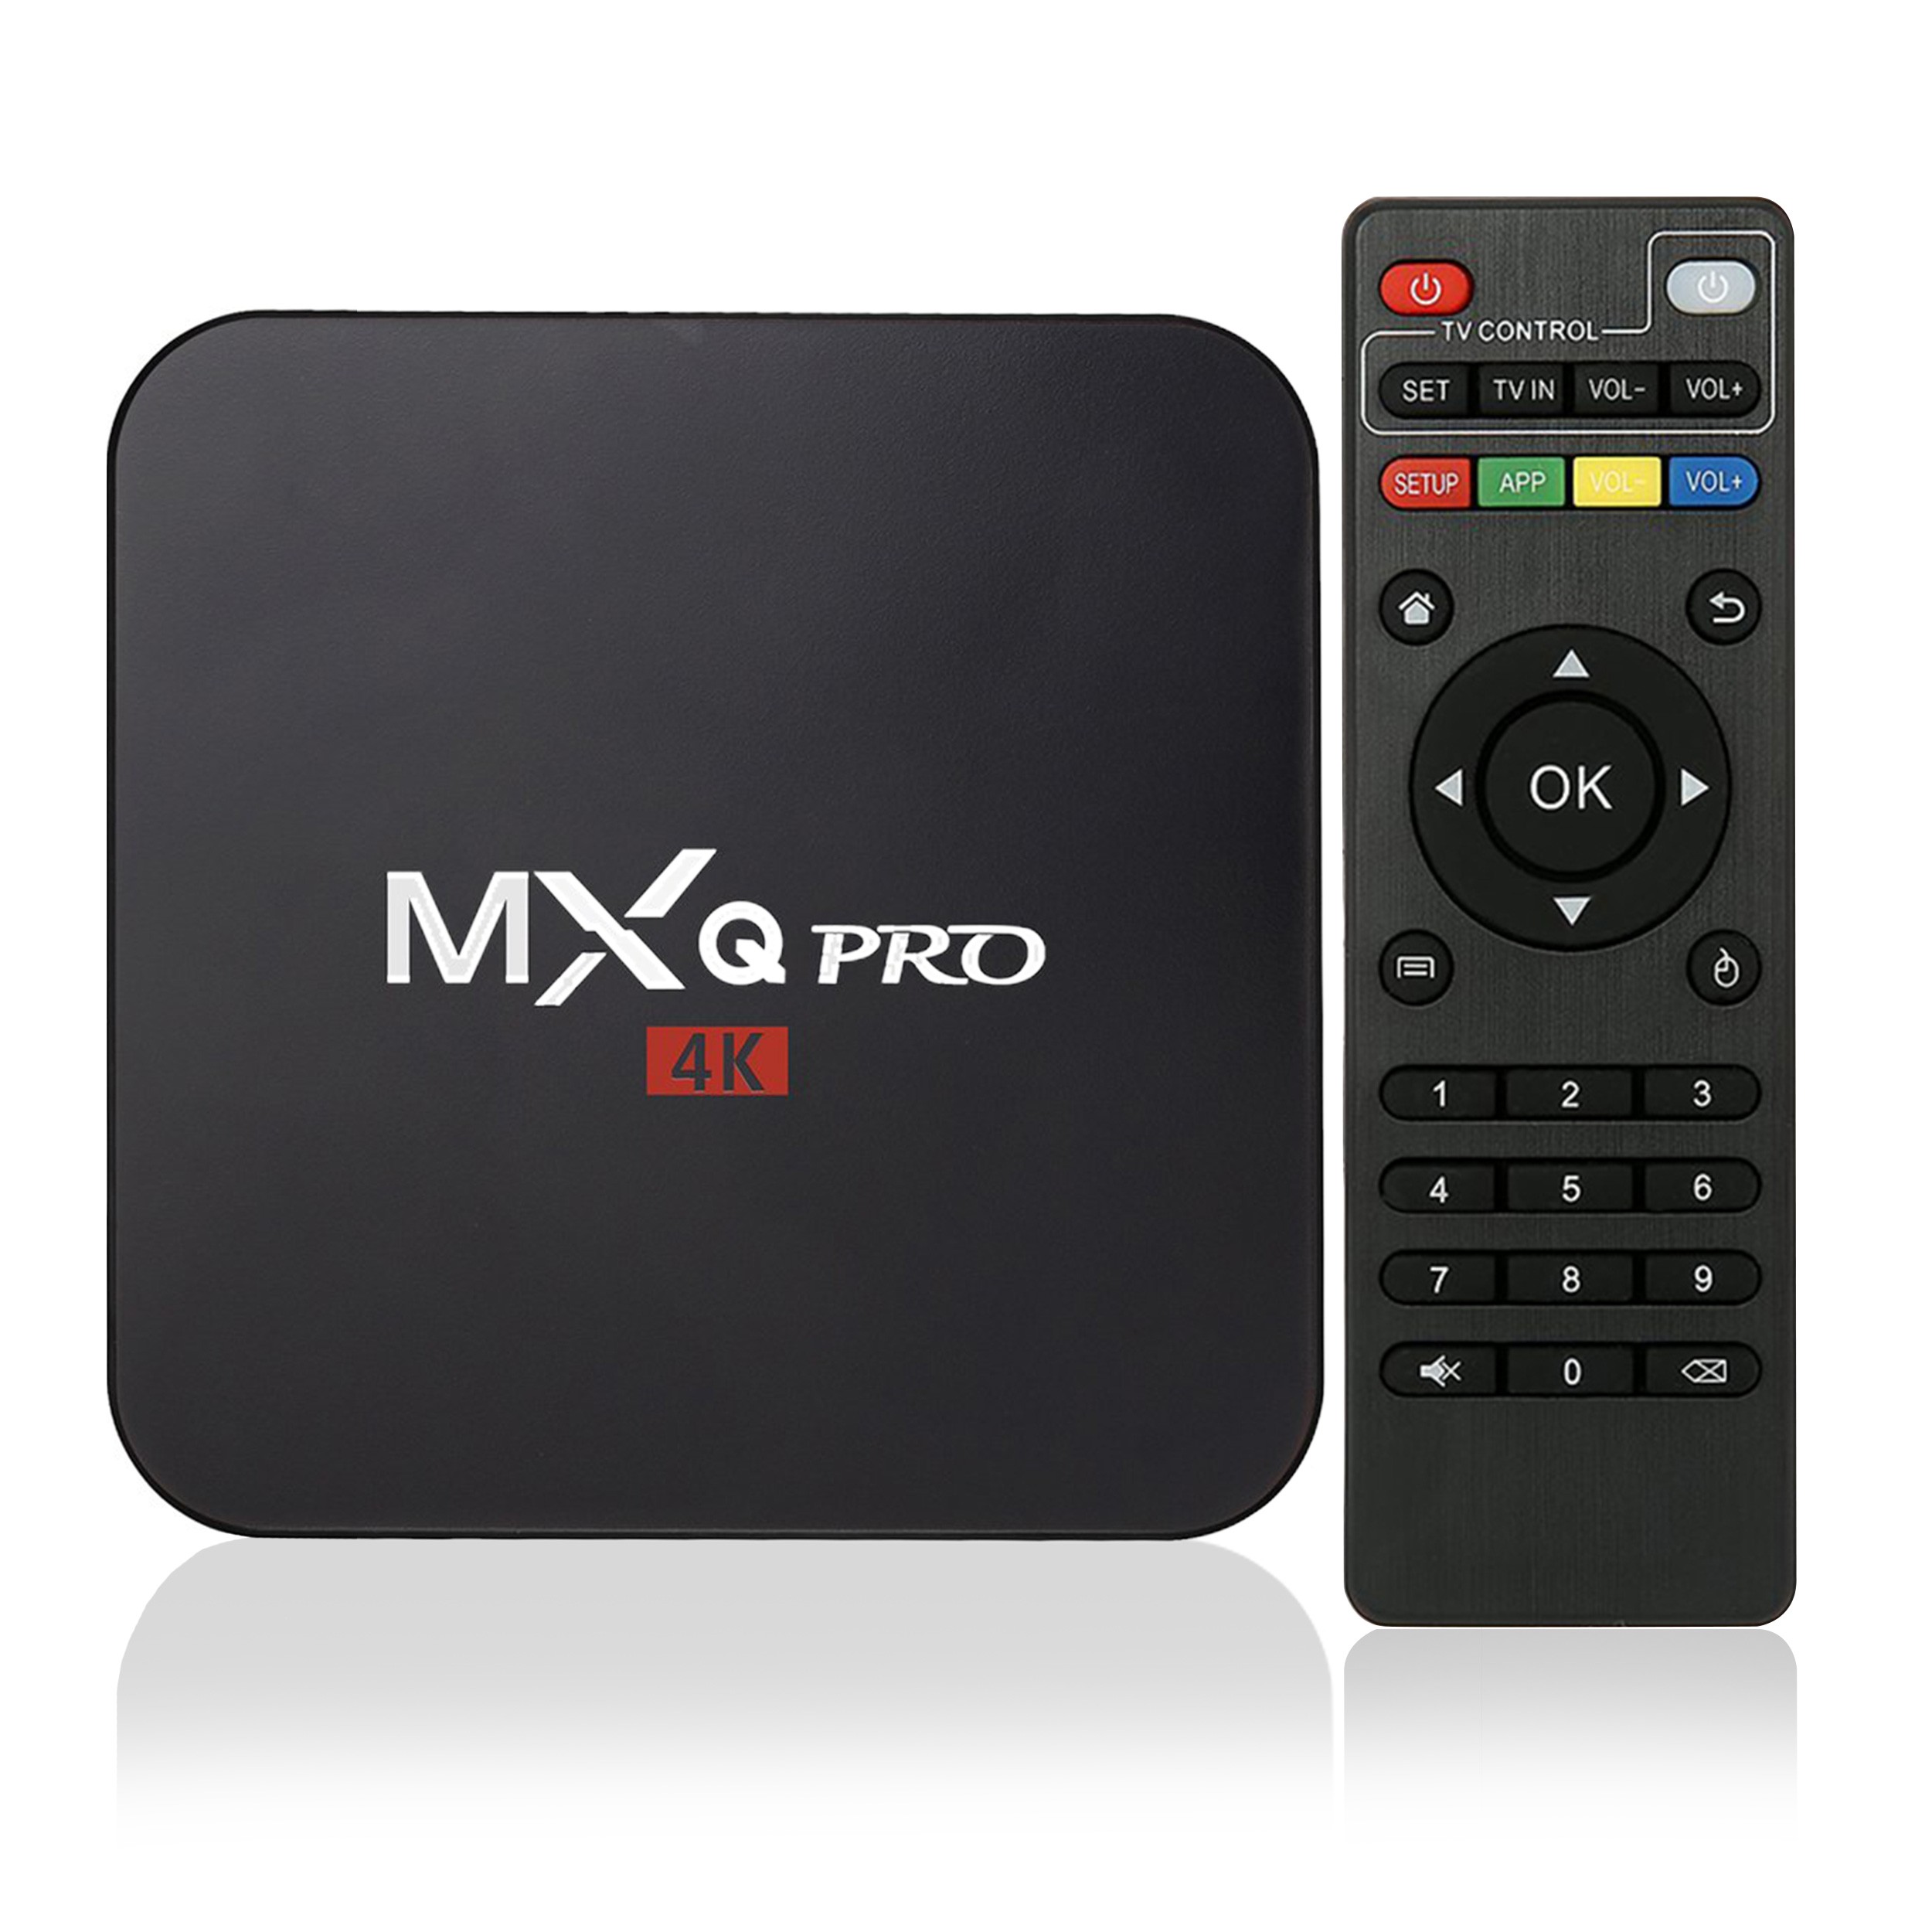 TV BOX MXQ PRO 1/8GB ANDROID 7 KODI SMART S905X 4K - 6882663183 Tv Box Mxq Pro 4k Local Channels